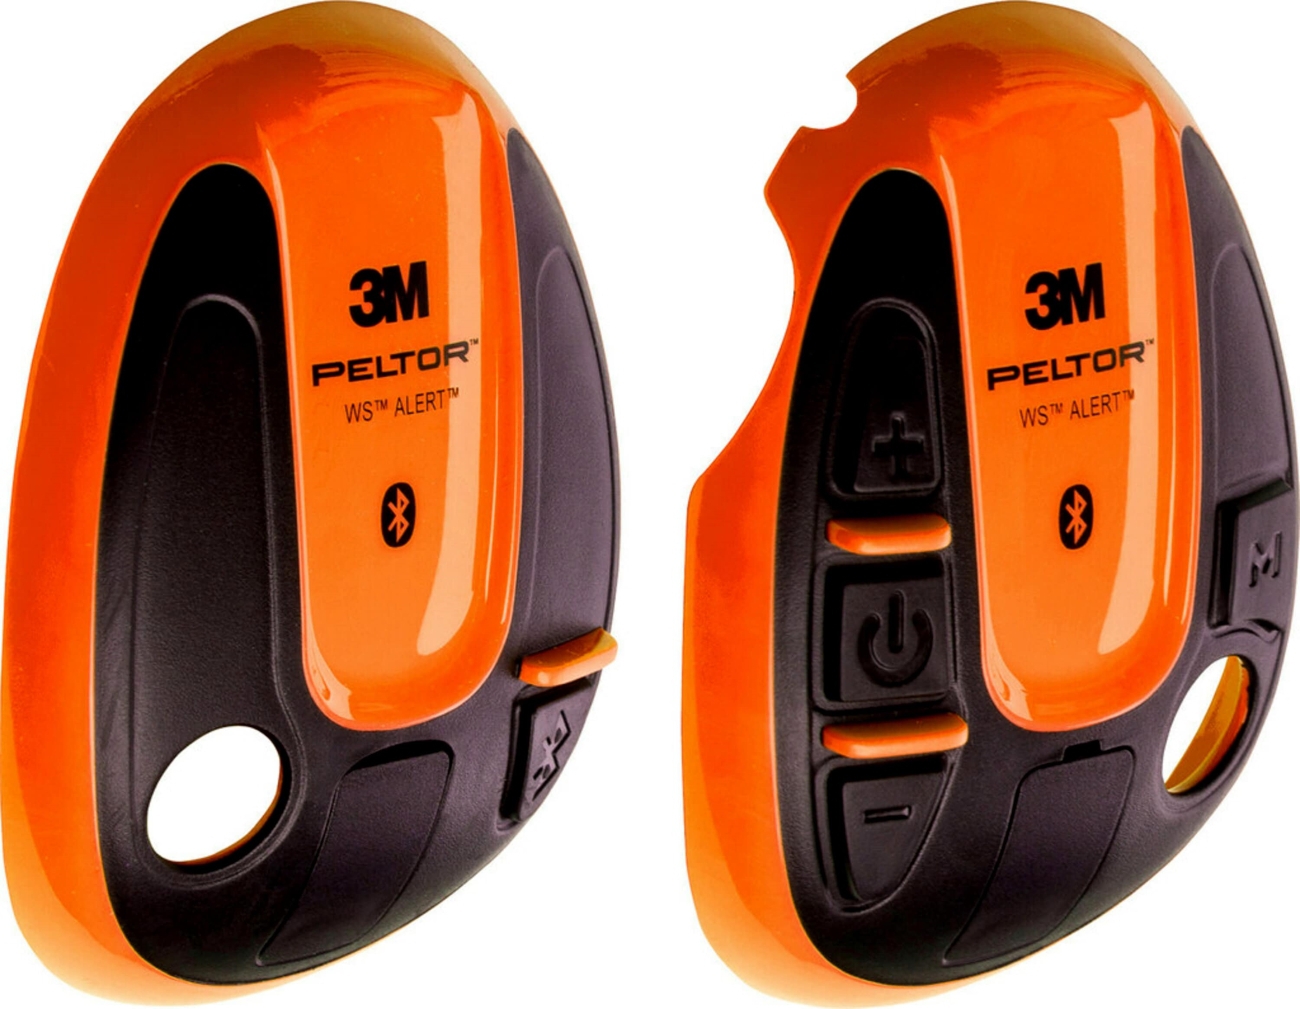 coperture 3M PELTOR per cuffie WS ALERT, arancione, 1 paio (sinistra+destra), 210300-664-OR/1